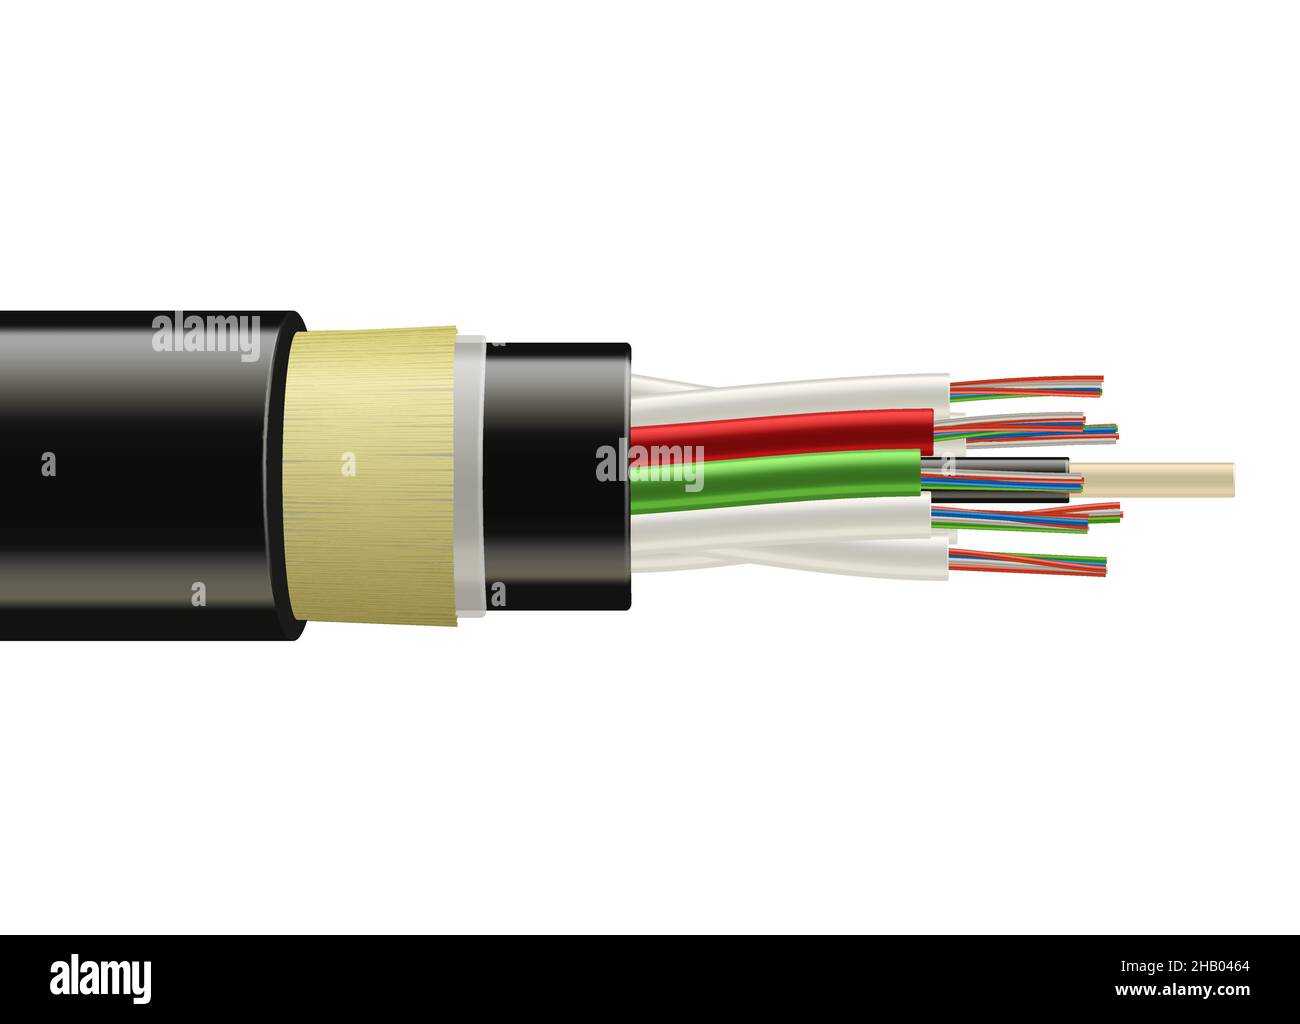 Glasfaser-Kabel, Breitband-Speed-Internet-Kabel. Vector realistische  flexible elektrische Kupferdrähte in Wicklung. Netzwerkoptisches, dichtes  Kabel, isoliert Stock-Vektorgrafik - Alamy